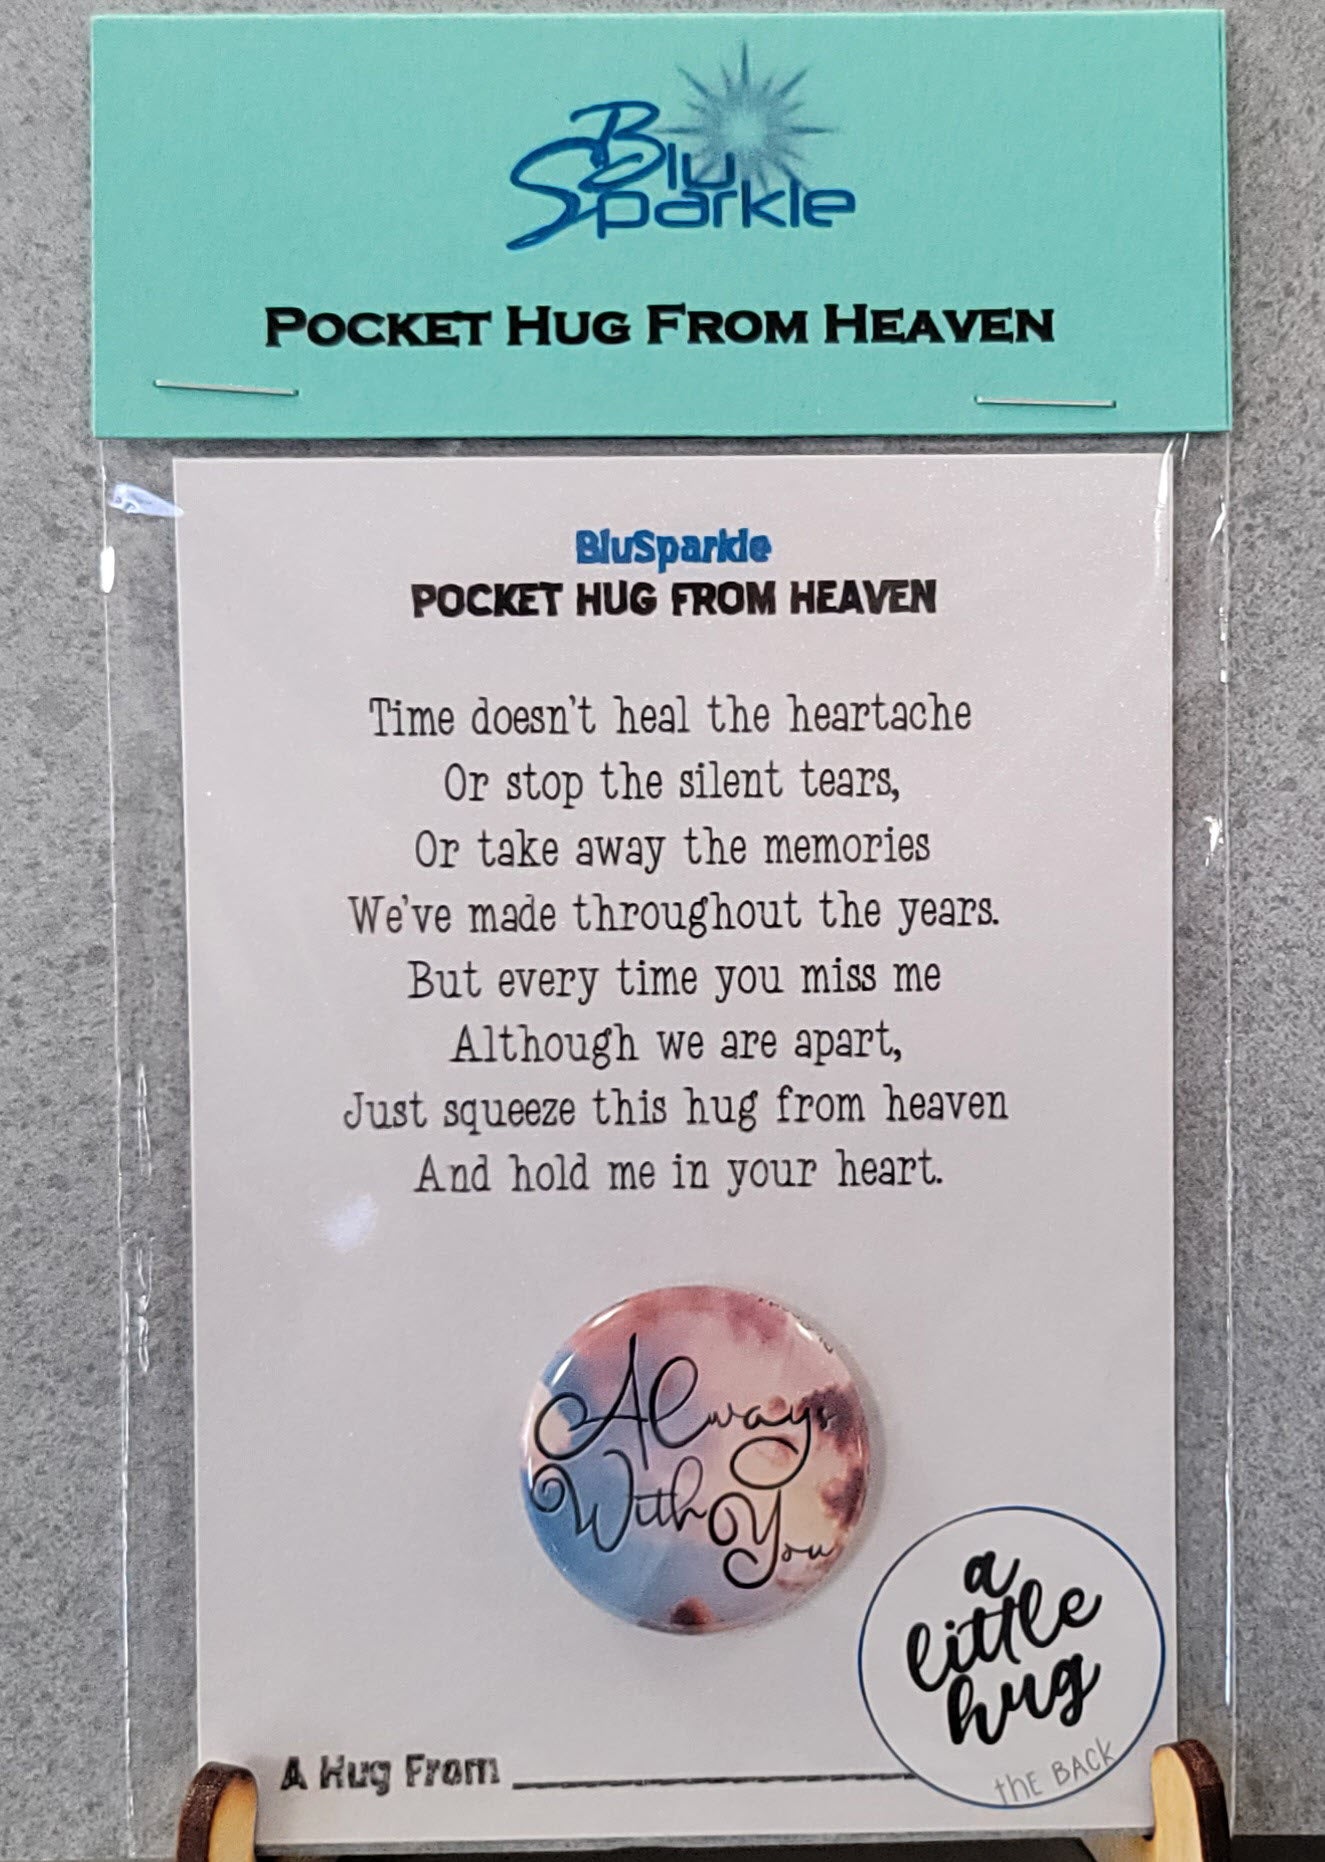 Pocket Hugs from Heaven